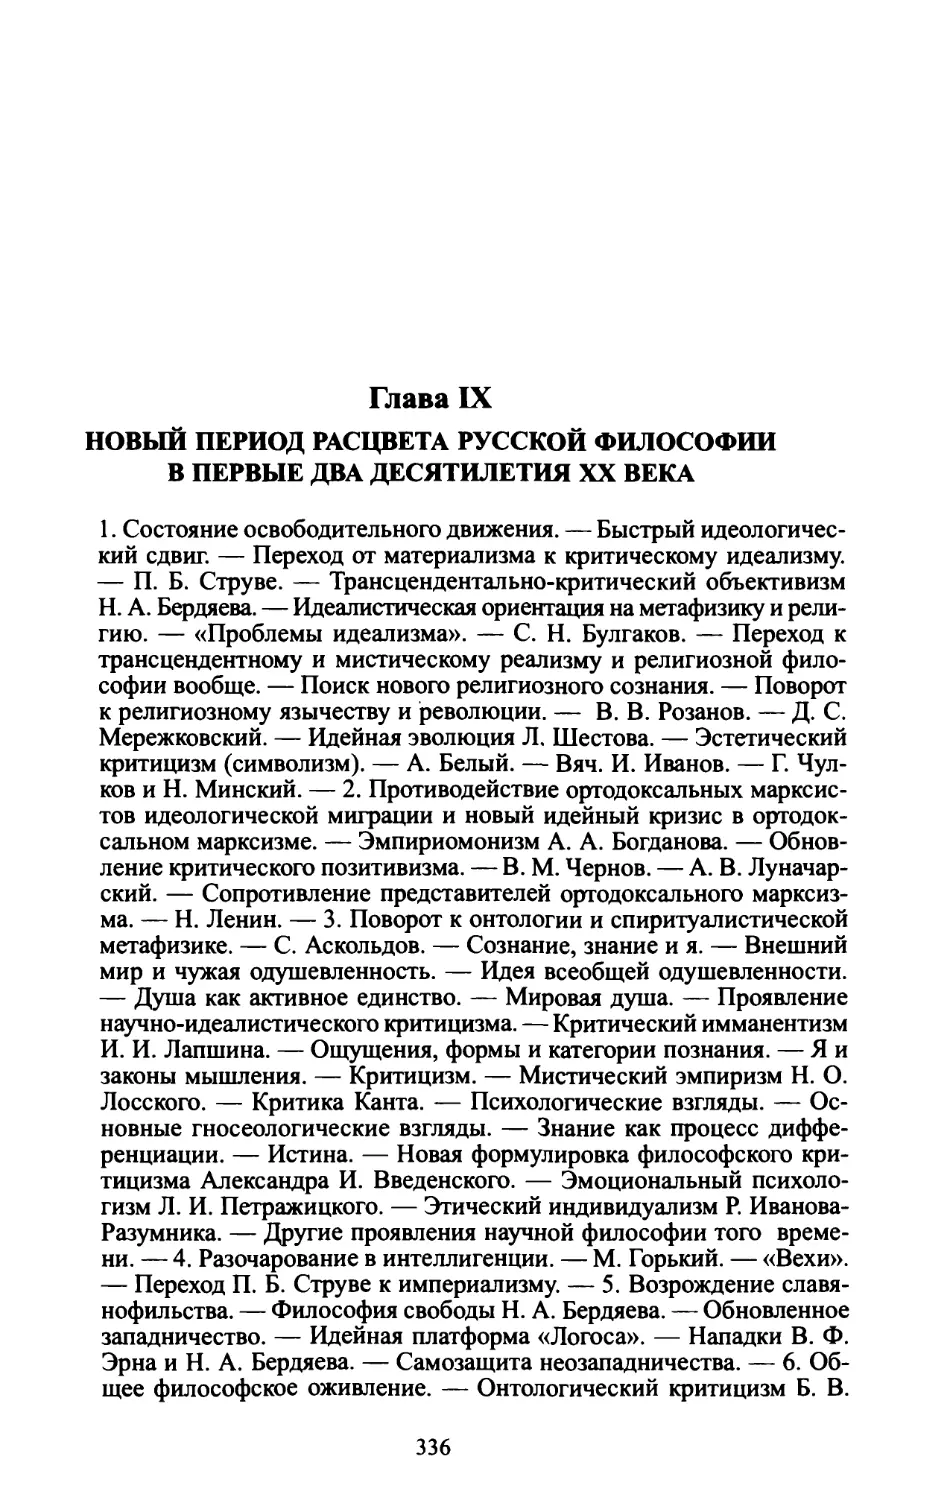 Глава IX. Новый период расцвета русской философии в первые два десятилетия XX века